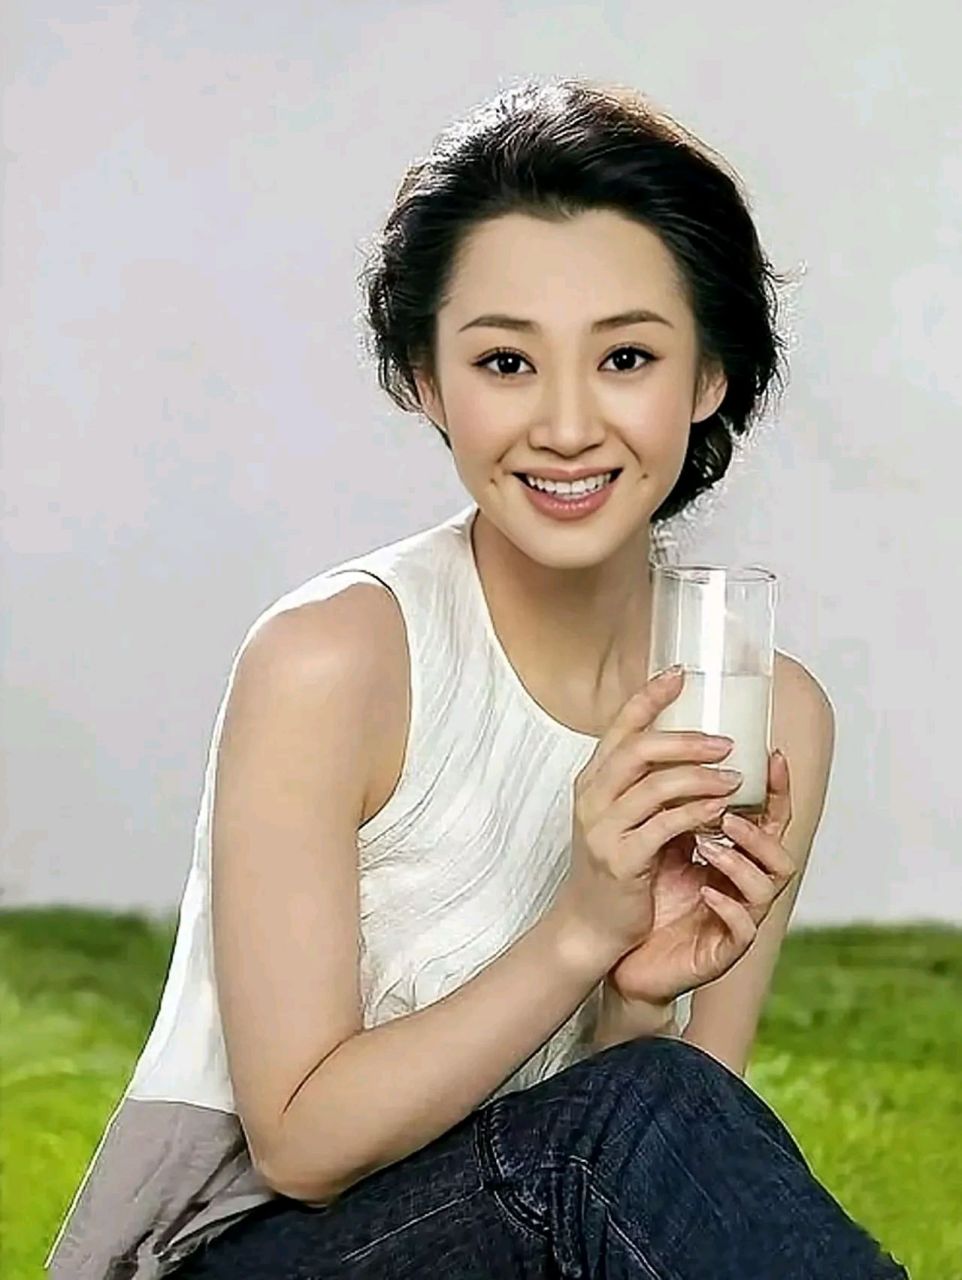 许晴,1969年1月22日出生于北京的一个书香世家  她毕业于北京电影学院